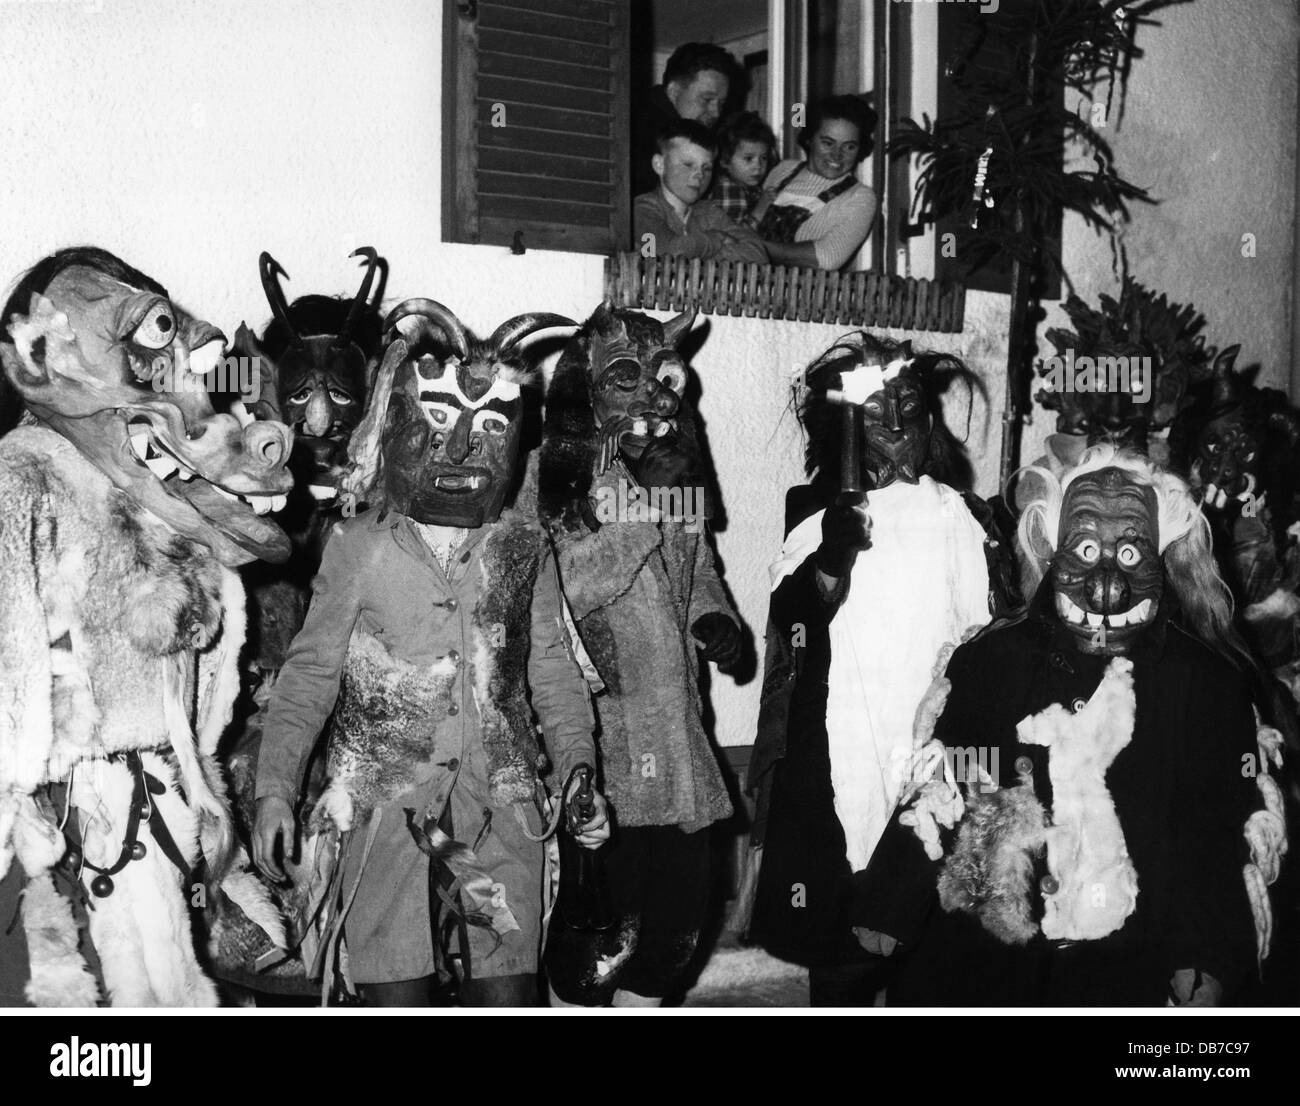 Festivités, Perchtenlaufen, Perchten lache avec masques en bois, Kirchseeon, 1962, droits-supplémentaires-Clearences-non disponible Banque D'Images